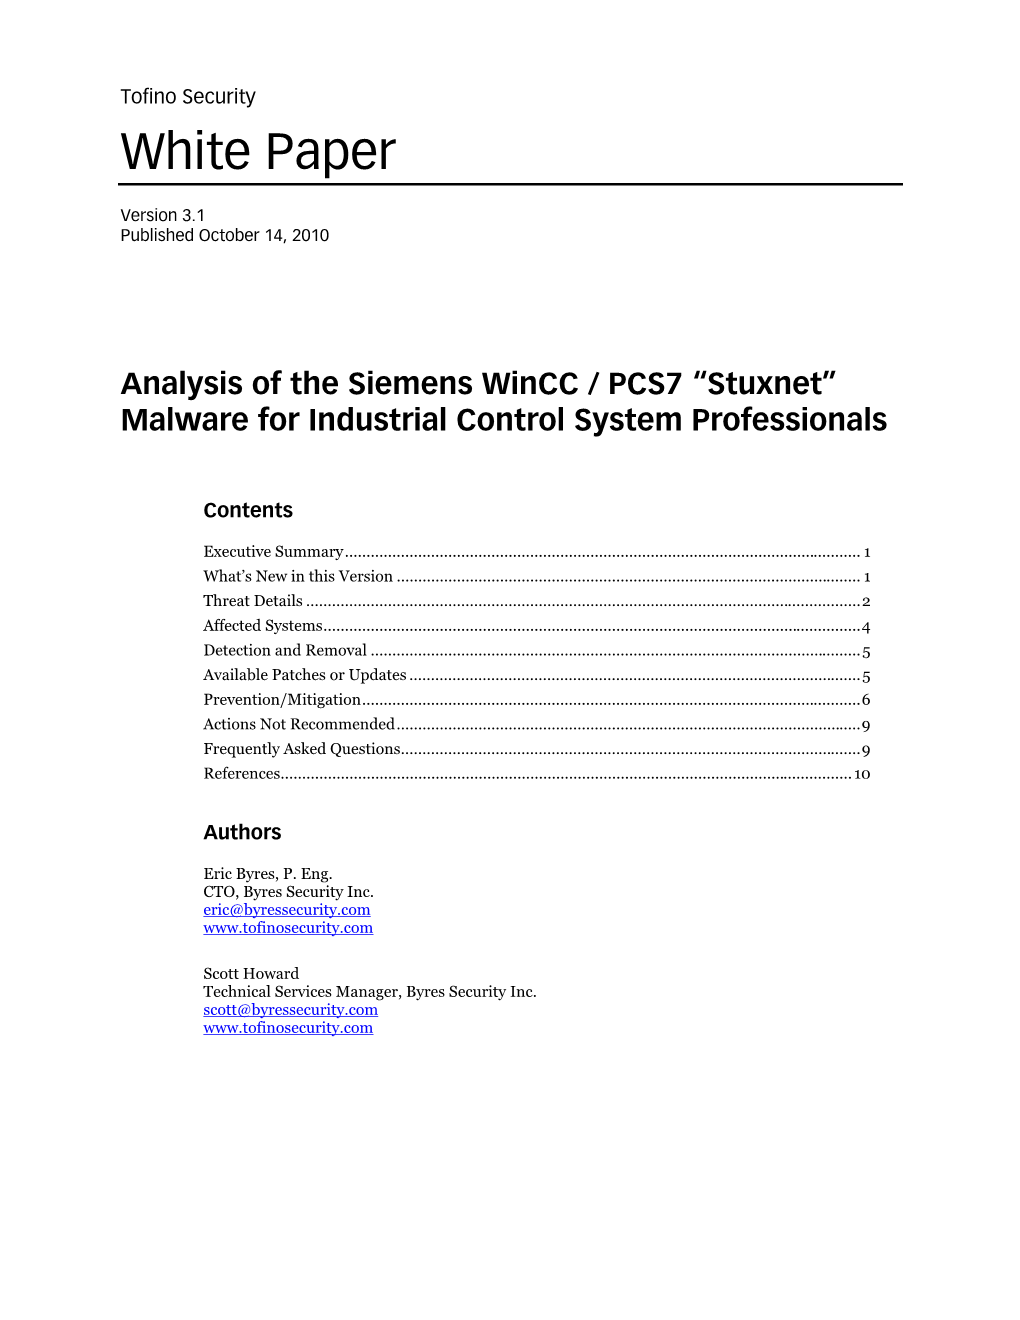 Analysis of Siemens Stuxnet Malware Attacks